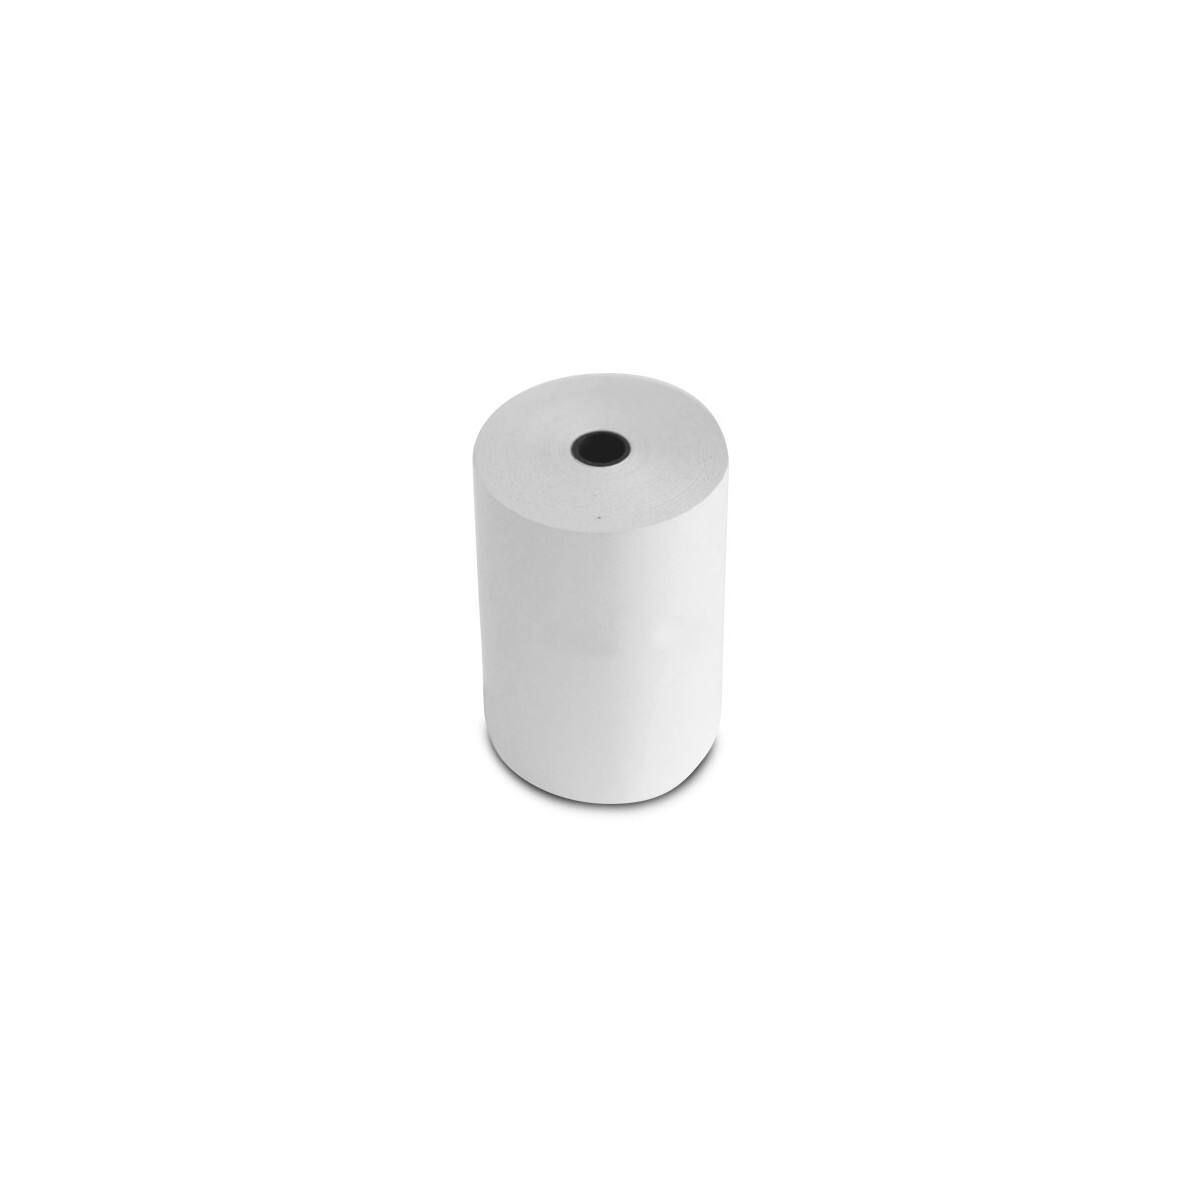 Bobine ou rouleau papier thermique 57 x 30 x 12 pour imprimante, CB, TPE